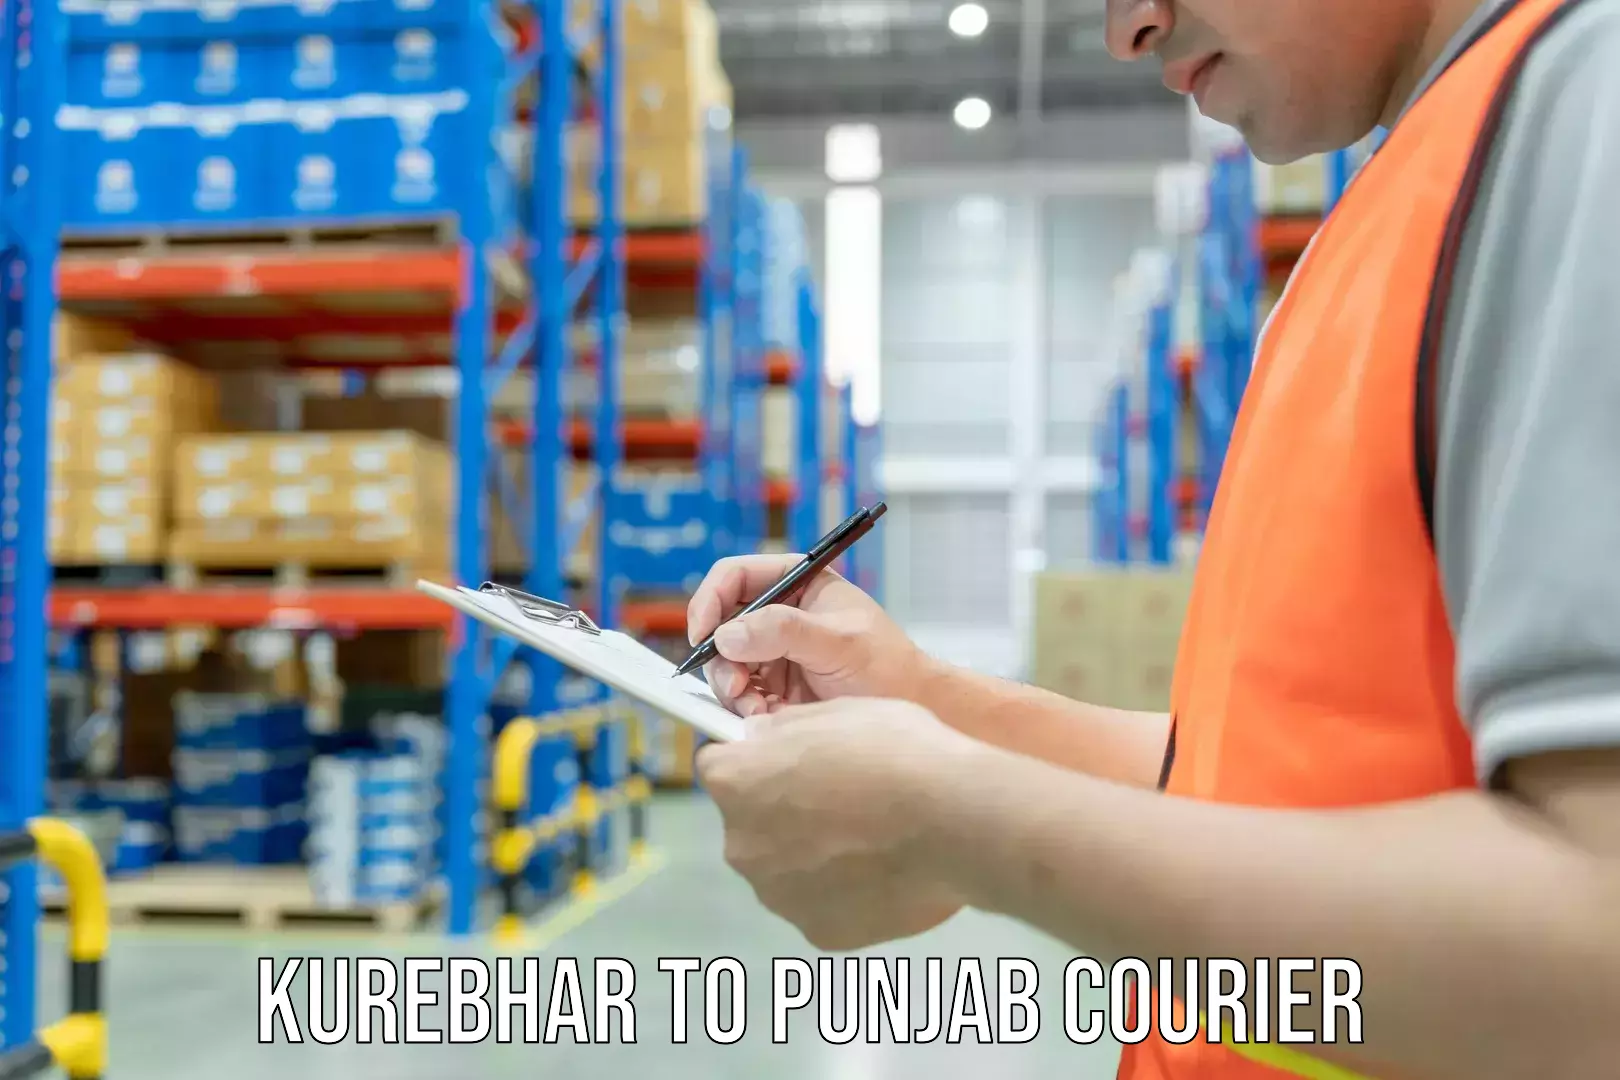 Quality furniture relocation in Kurebhar to Punjab